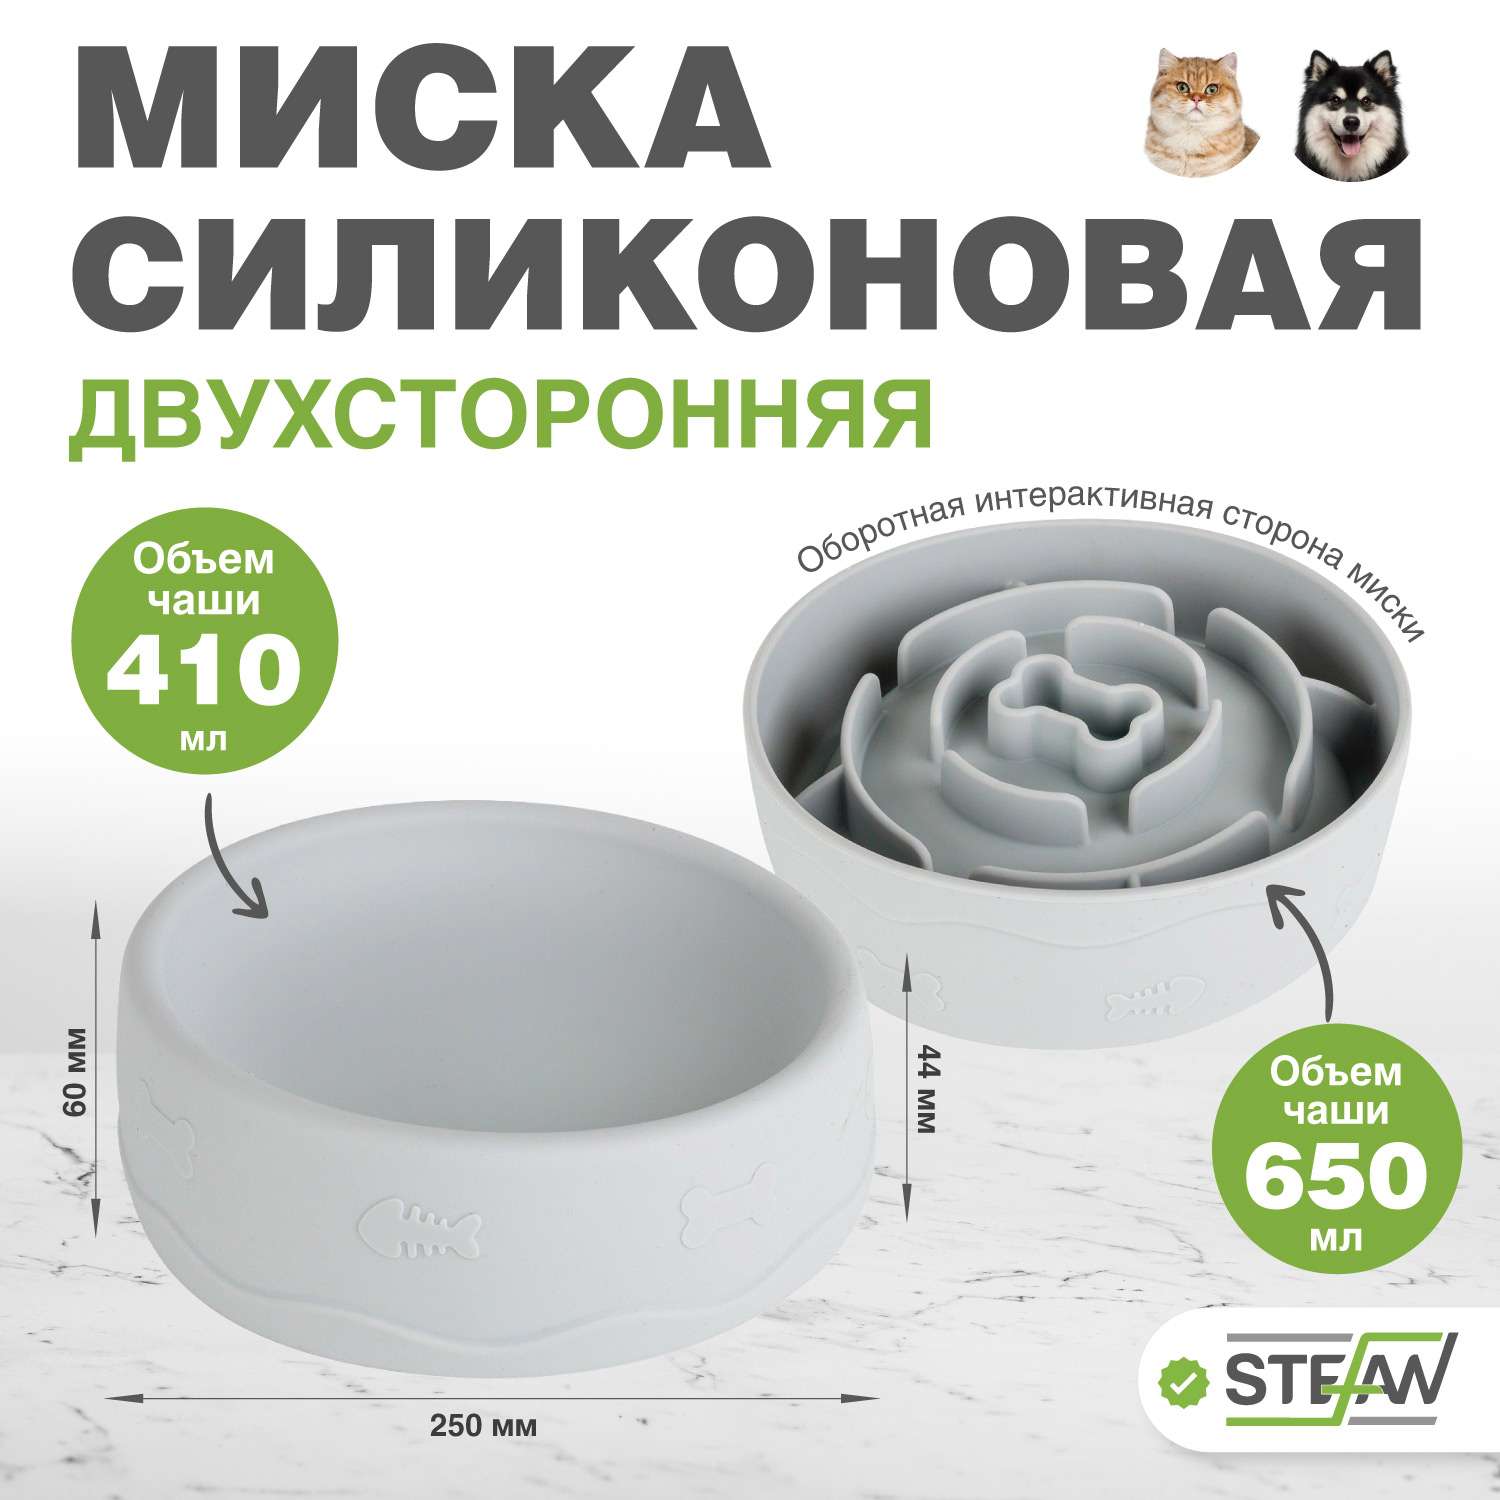 Миска для собак и кошек Stefan силиконовая двухсторонняя интерактивная 410мл 650мл для кормления серая - фото 1